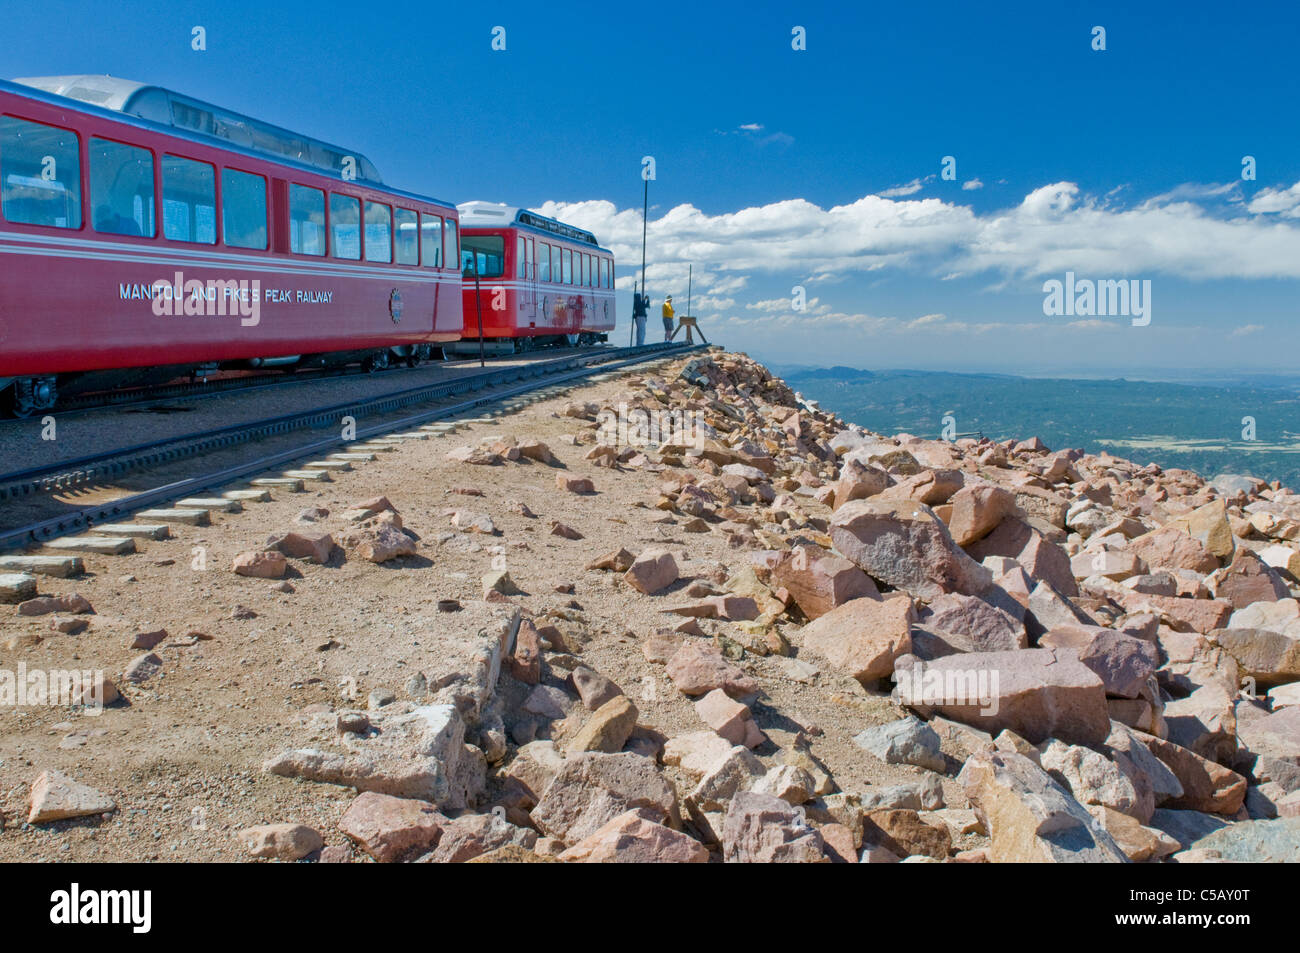 Top of Pikes Peak, Railway, USA, Colorado, Manitou Springs, Pikes Peak Cog Railway, historic train on a mountain. Stock Photo